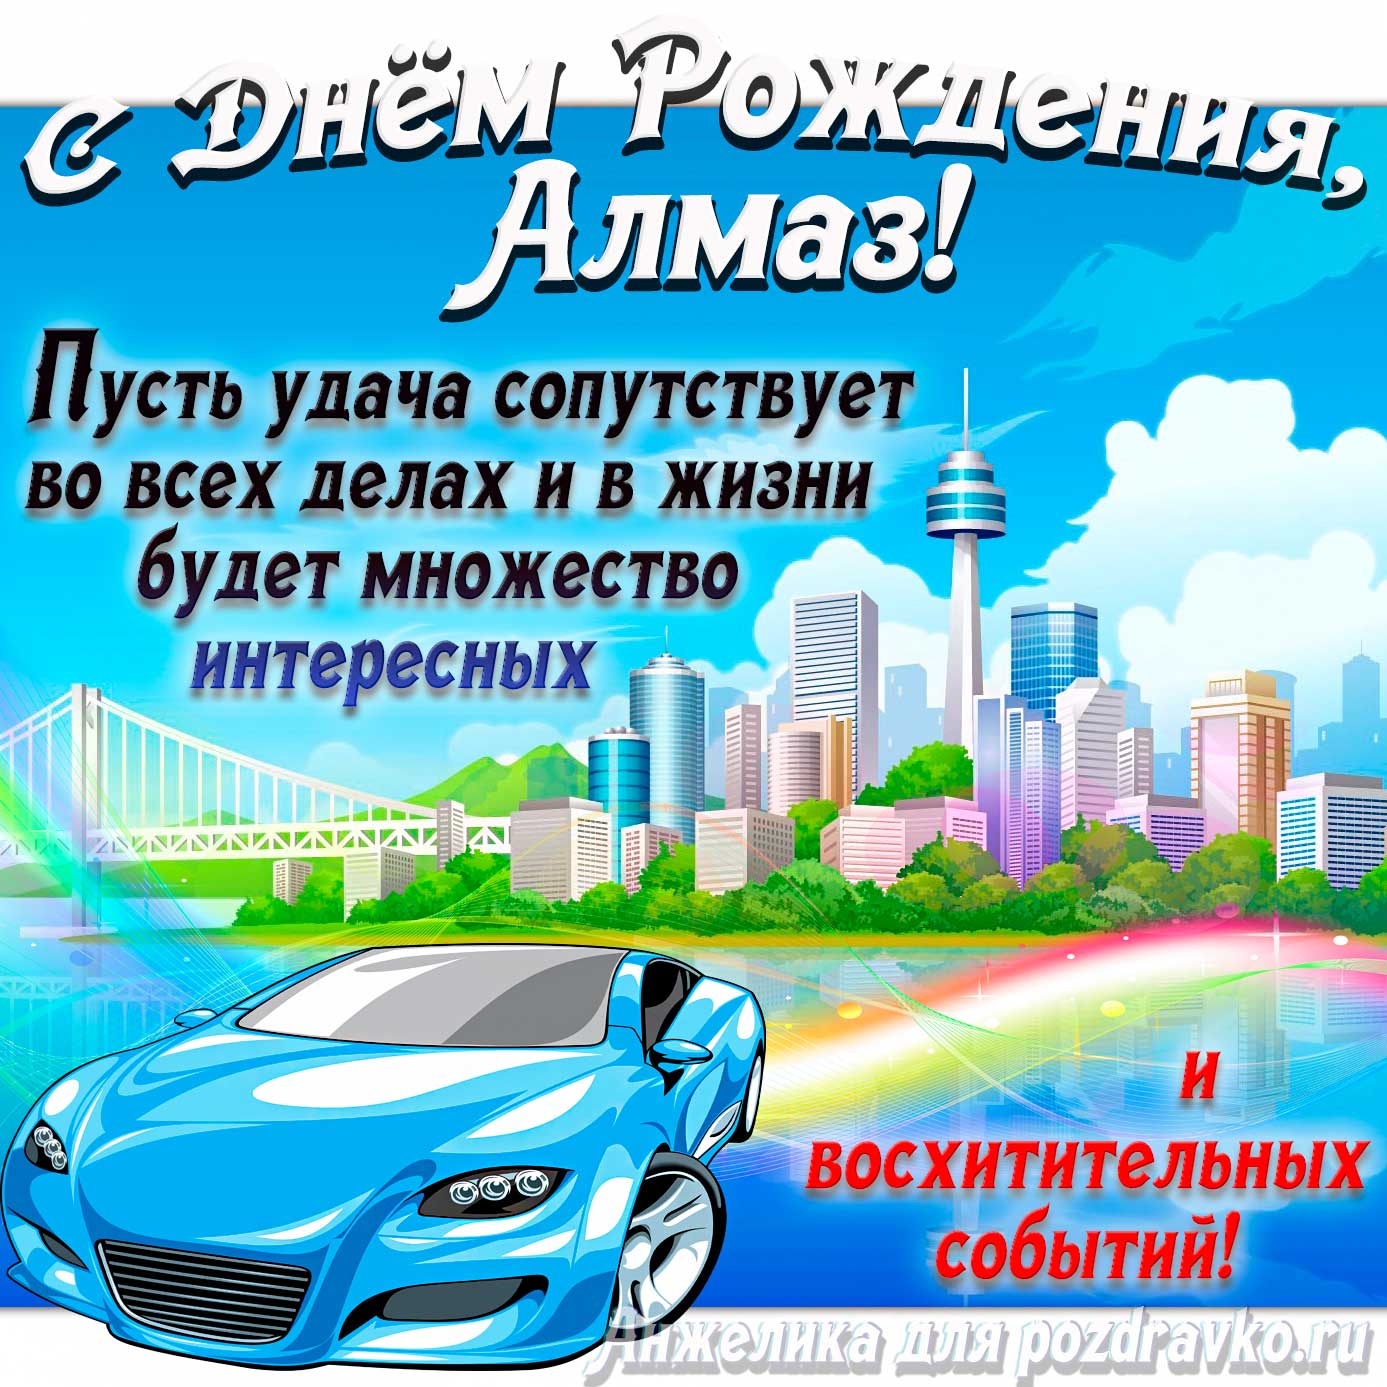 Открытка - с Днём Рождения Алмаз с голубой машиной и пожеланием. Скачать бесплатно или отправить картинку.